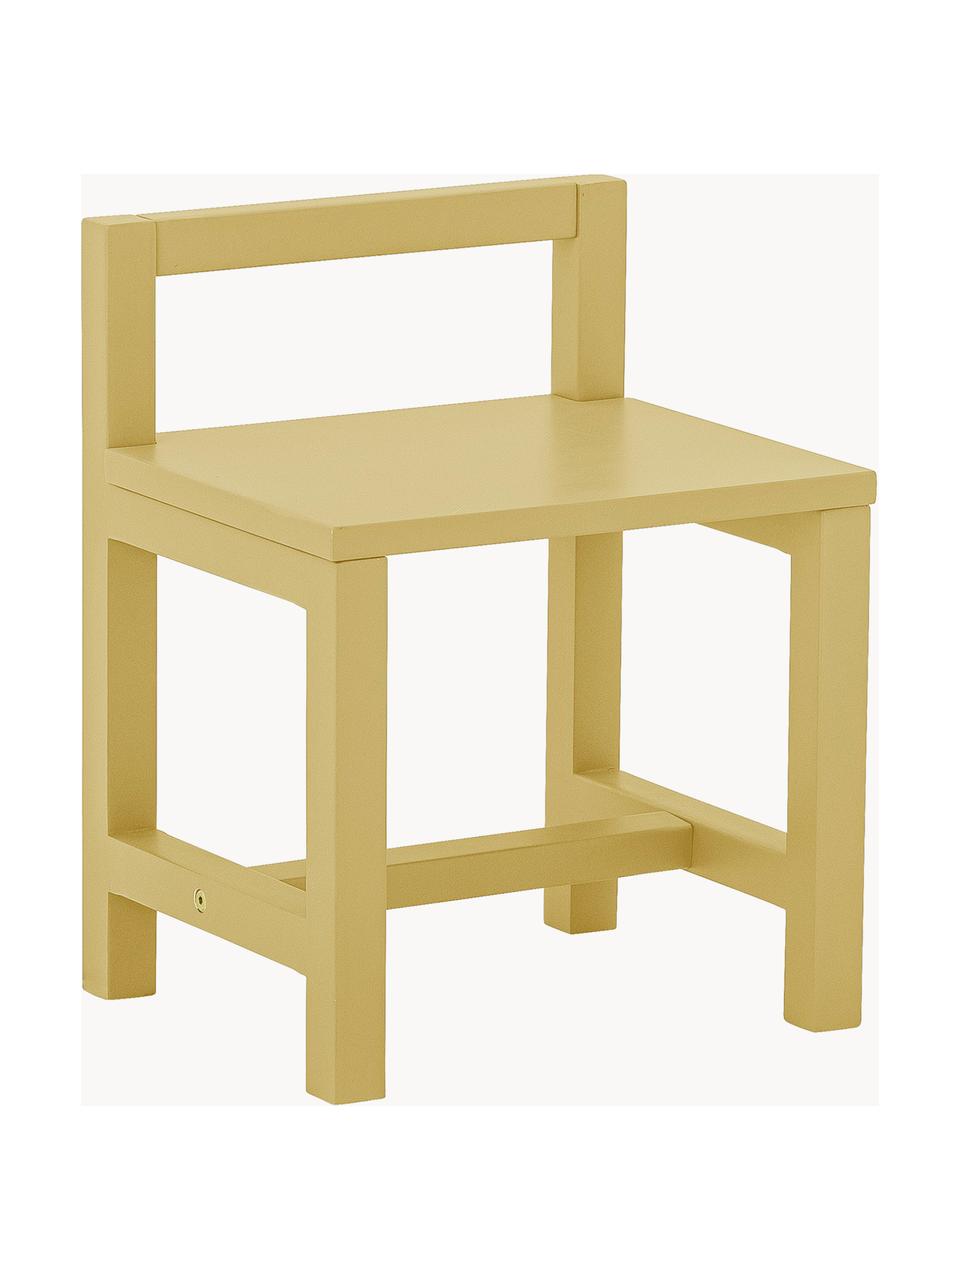 Chaise pour enfant Rese, MDF (panneau en fibres de bois à densité moyenne), bois d'hévéa, Jaune, larg. 32 x prof. 28 cm